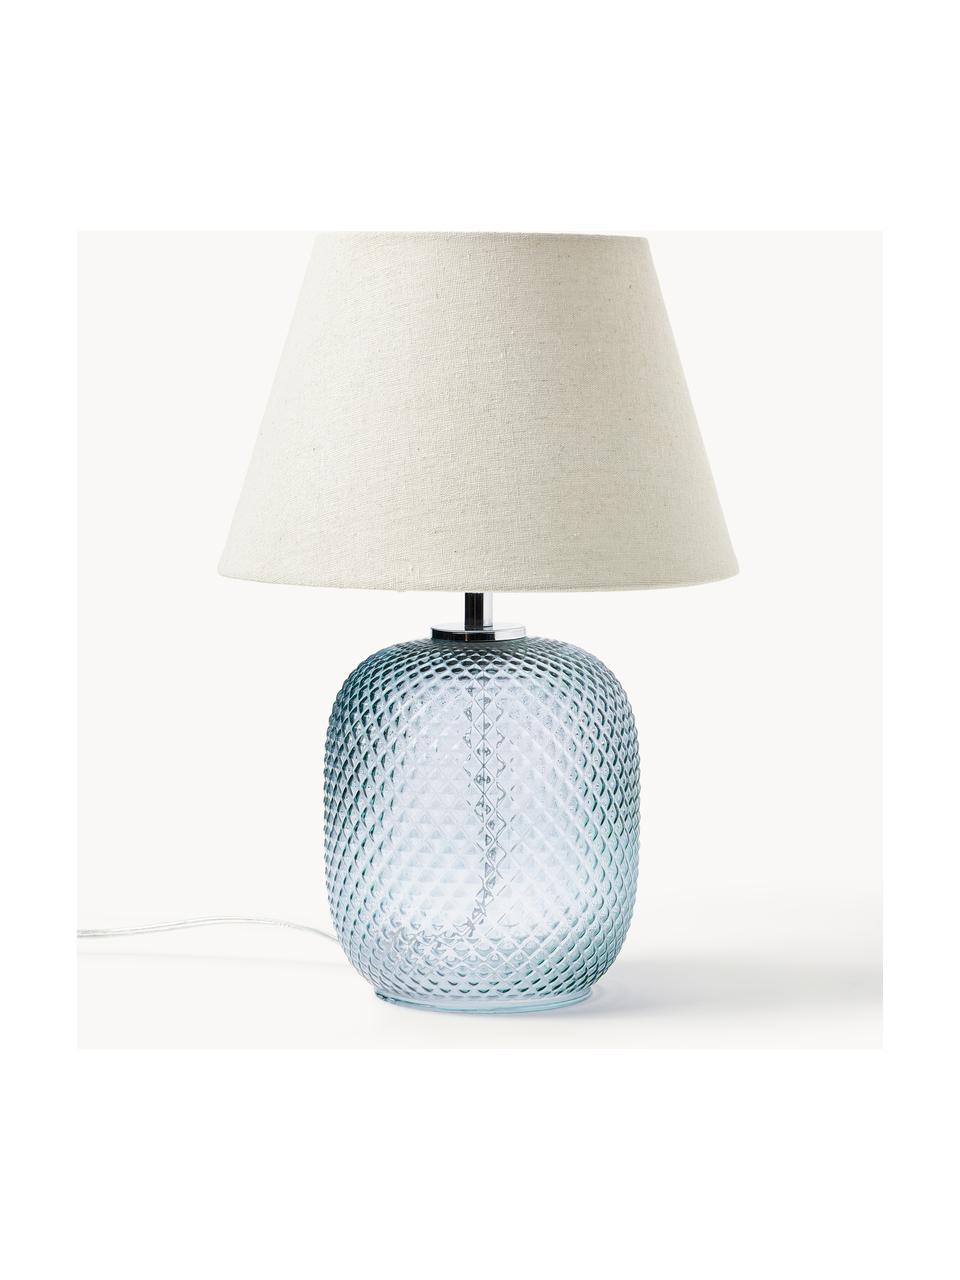 Kleine Tischlampe Cornelia, Lampenschirm: Polyester, Lampenfuß: Glas, Beige, Hellblau, Ø 28 x H 38 cm